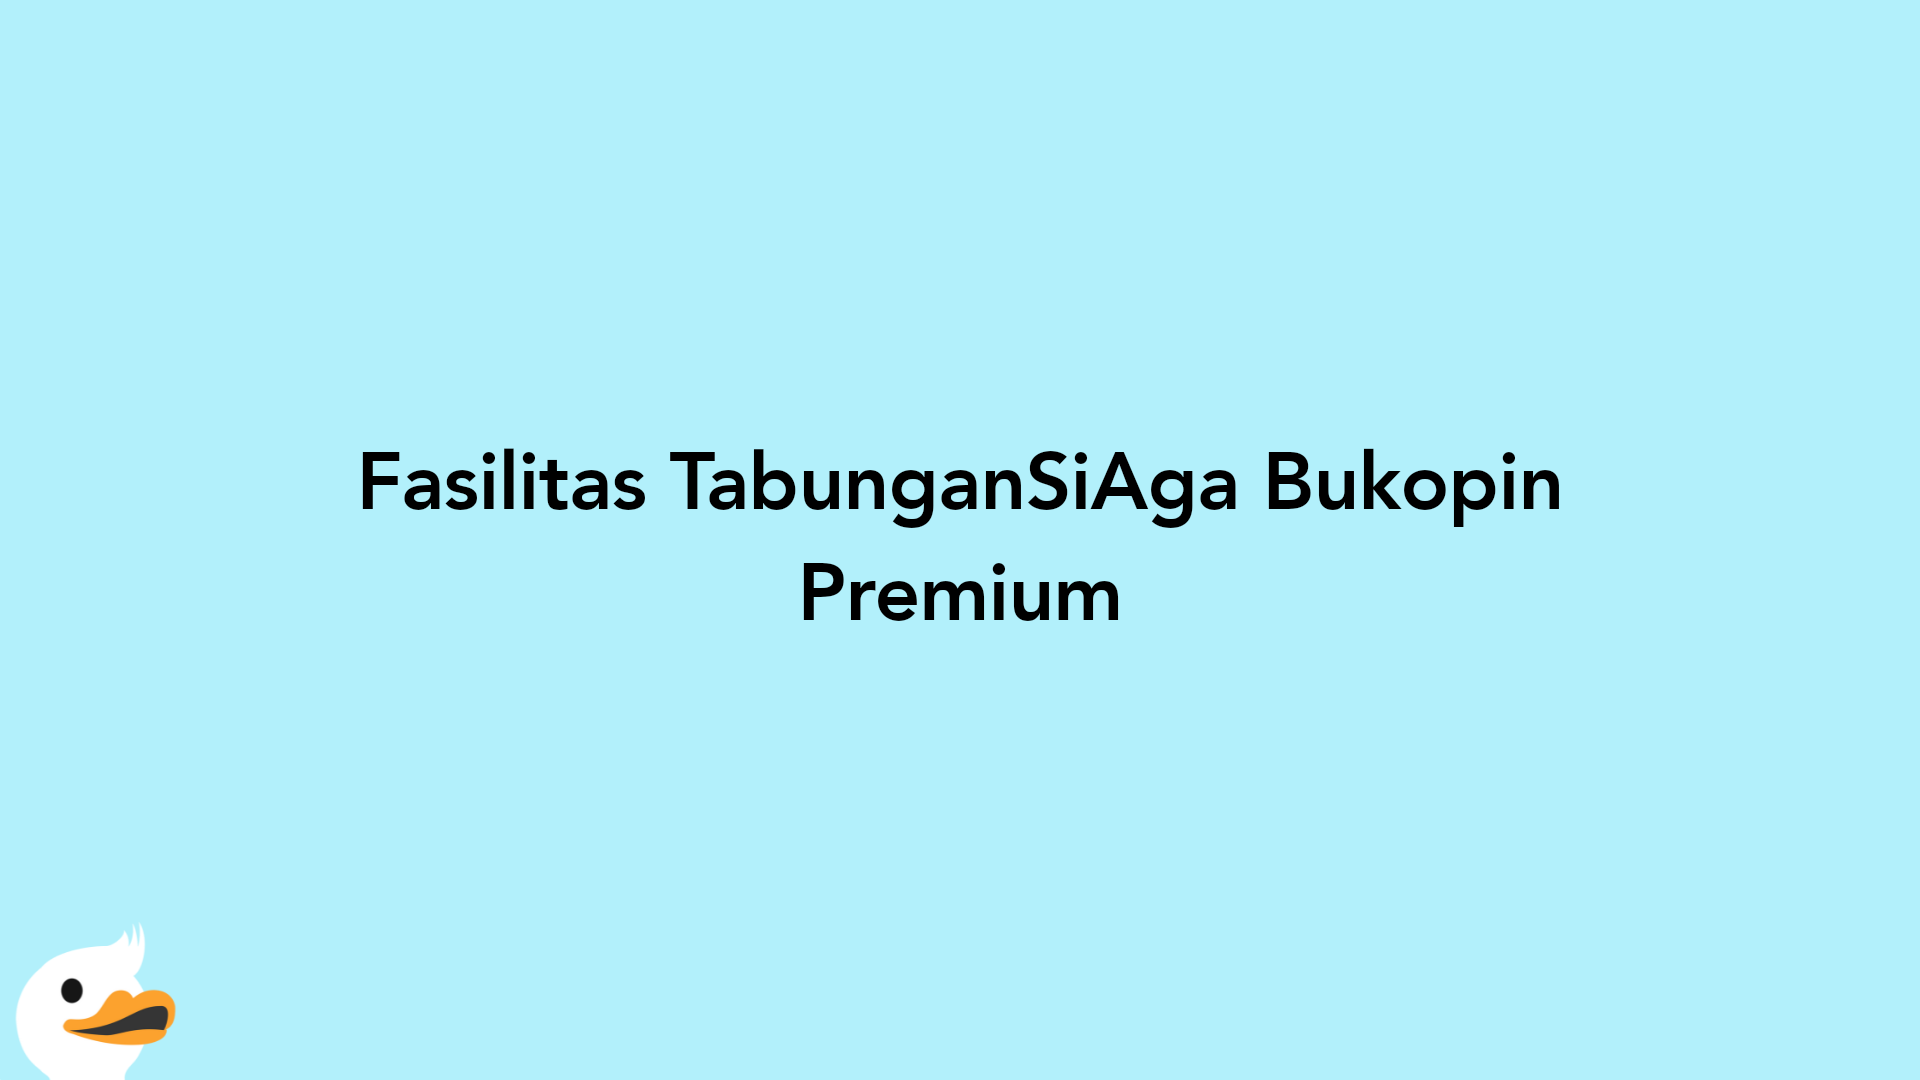 Fasilitas TabunganSiAga Bukopin Premium